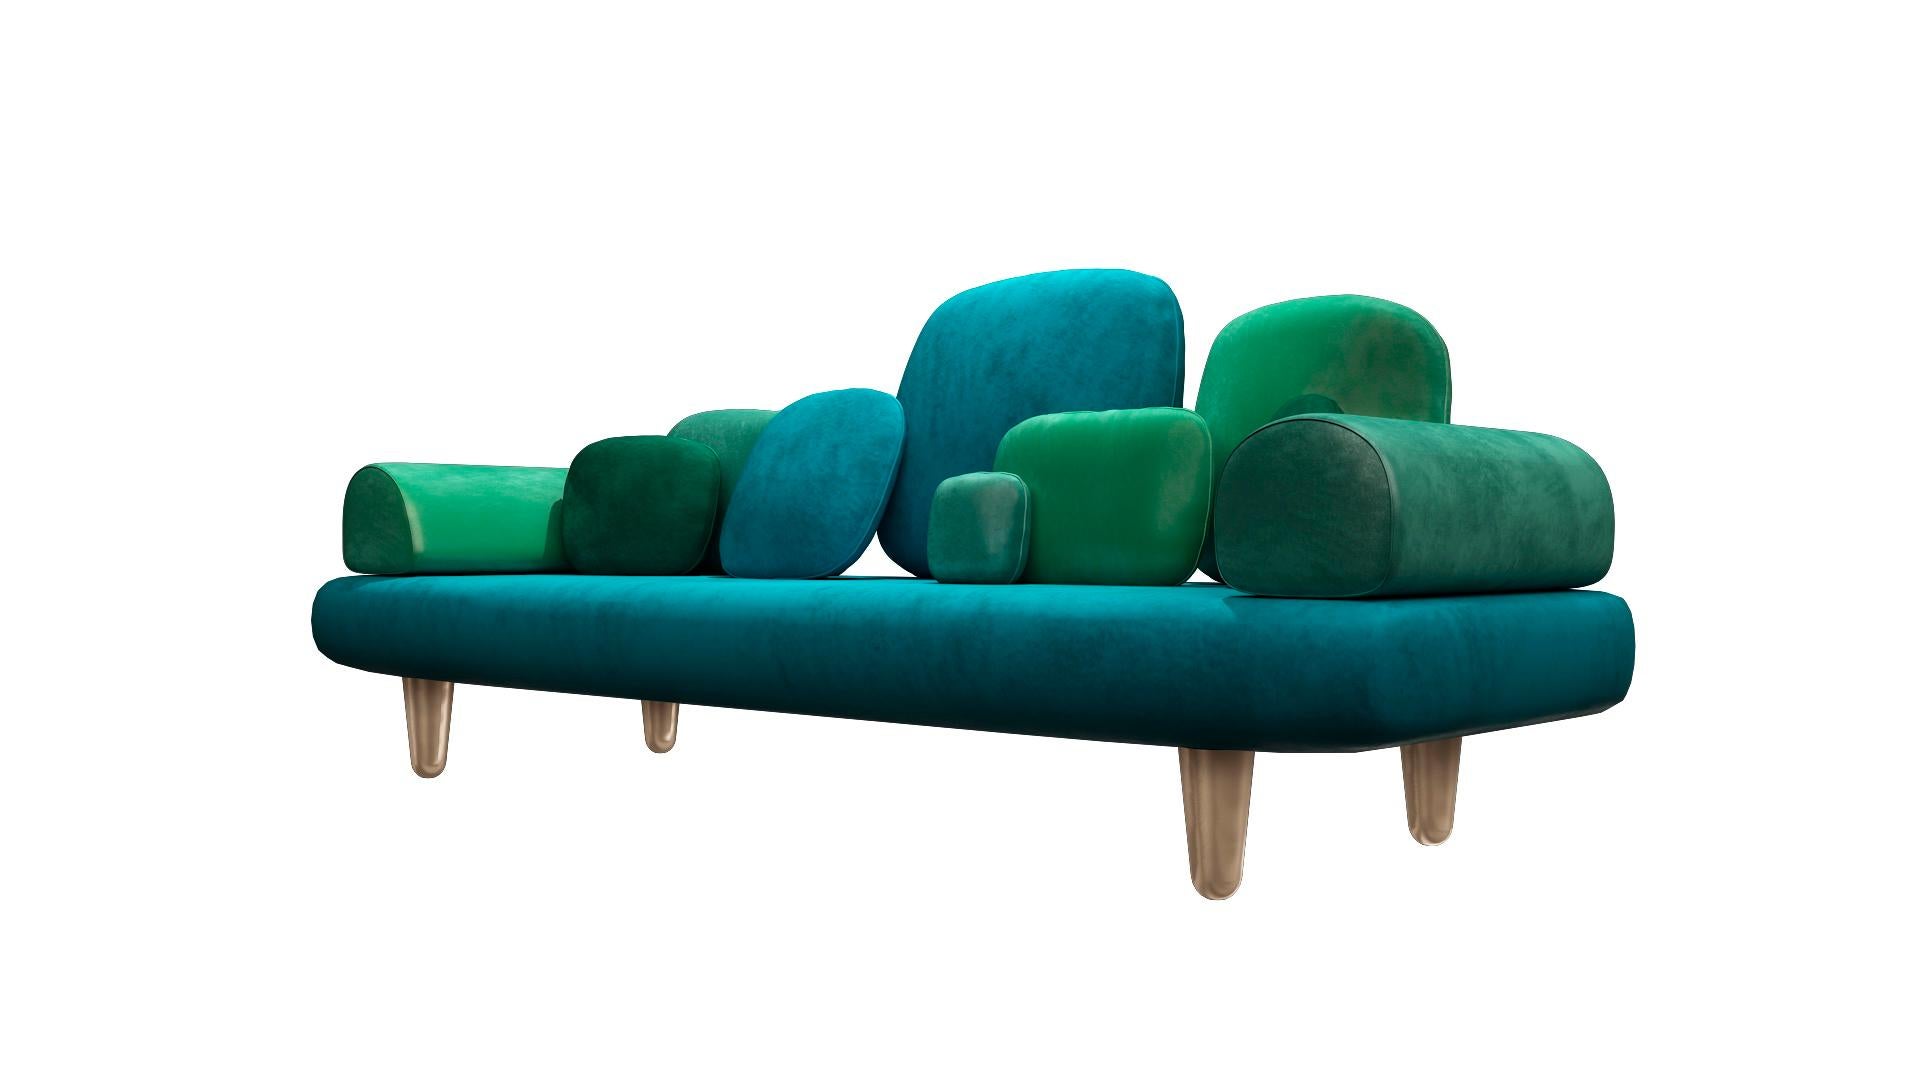 Das Forest 3-Sitzer-Sofa mit grünem Plüschsamt von Marcantonio ist ein bequemes Dreisitzer-Sofa mit einer Reihe von Kissen in verschiedenen grünen Samtarten.

Für seine ersten Kreationen stellte Marcantonio 